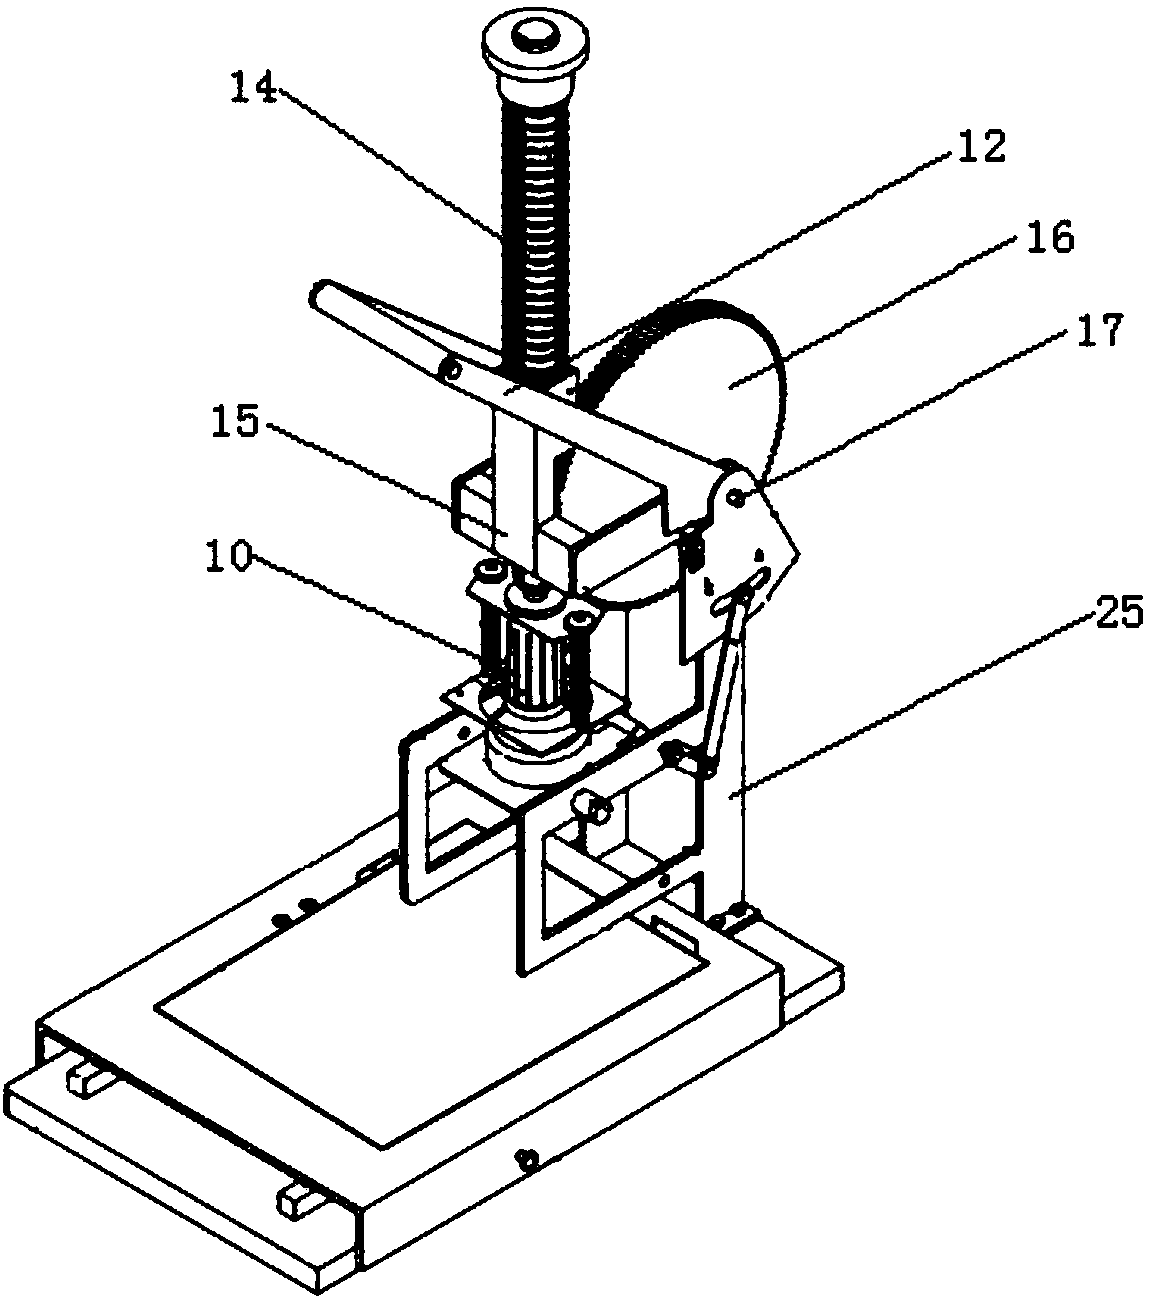 Manual stamping machine